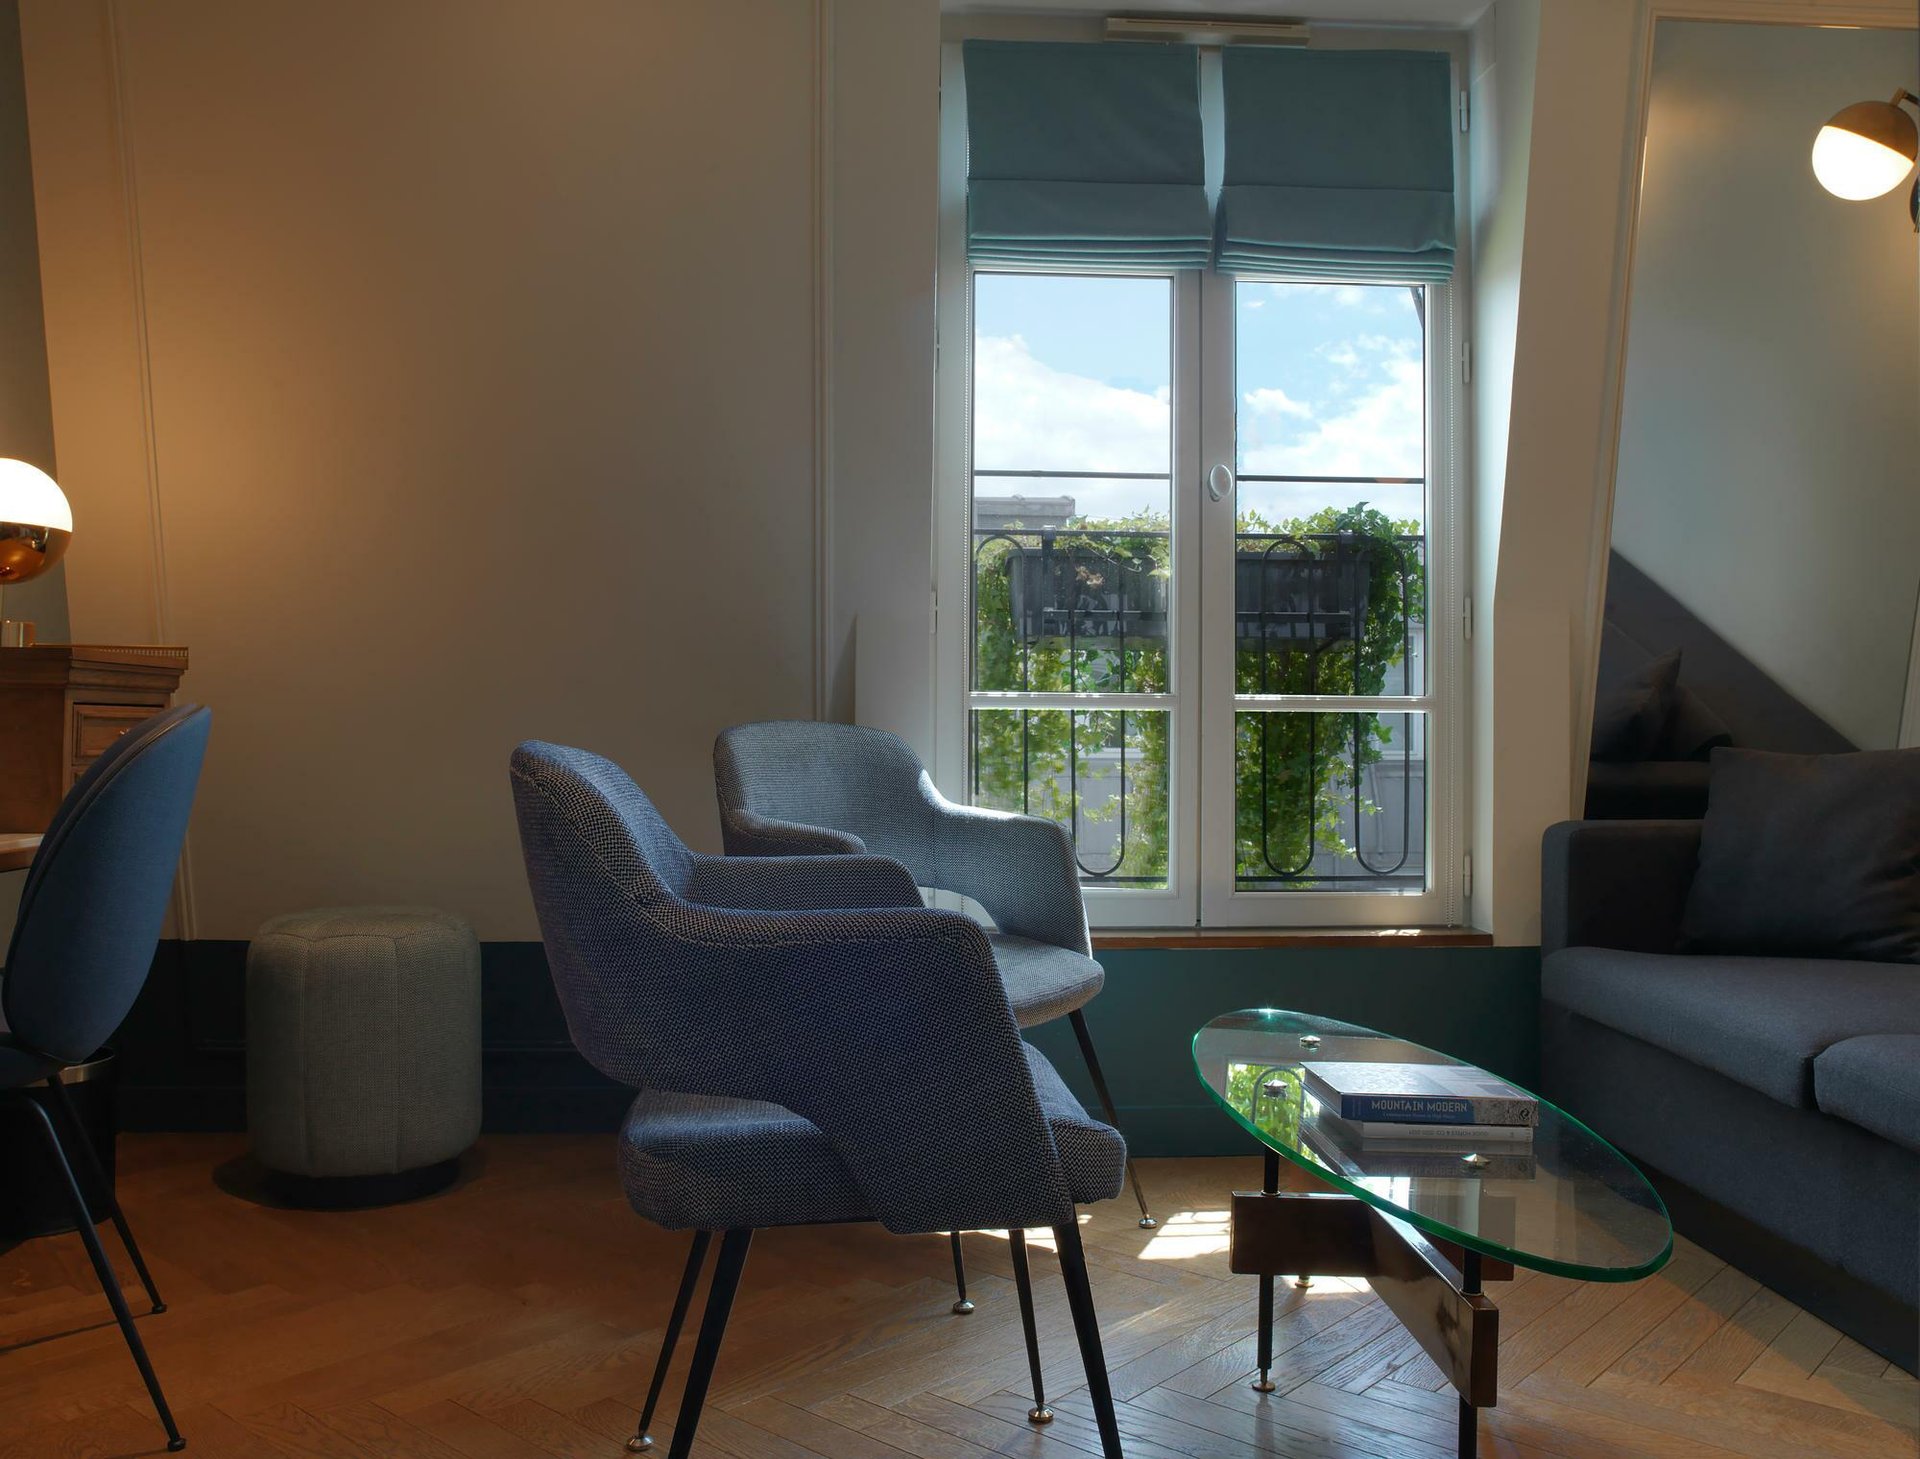 Hotel Bachaumont | Parisian Suite | Living Room